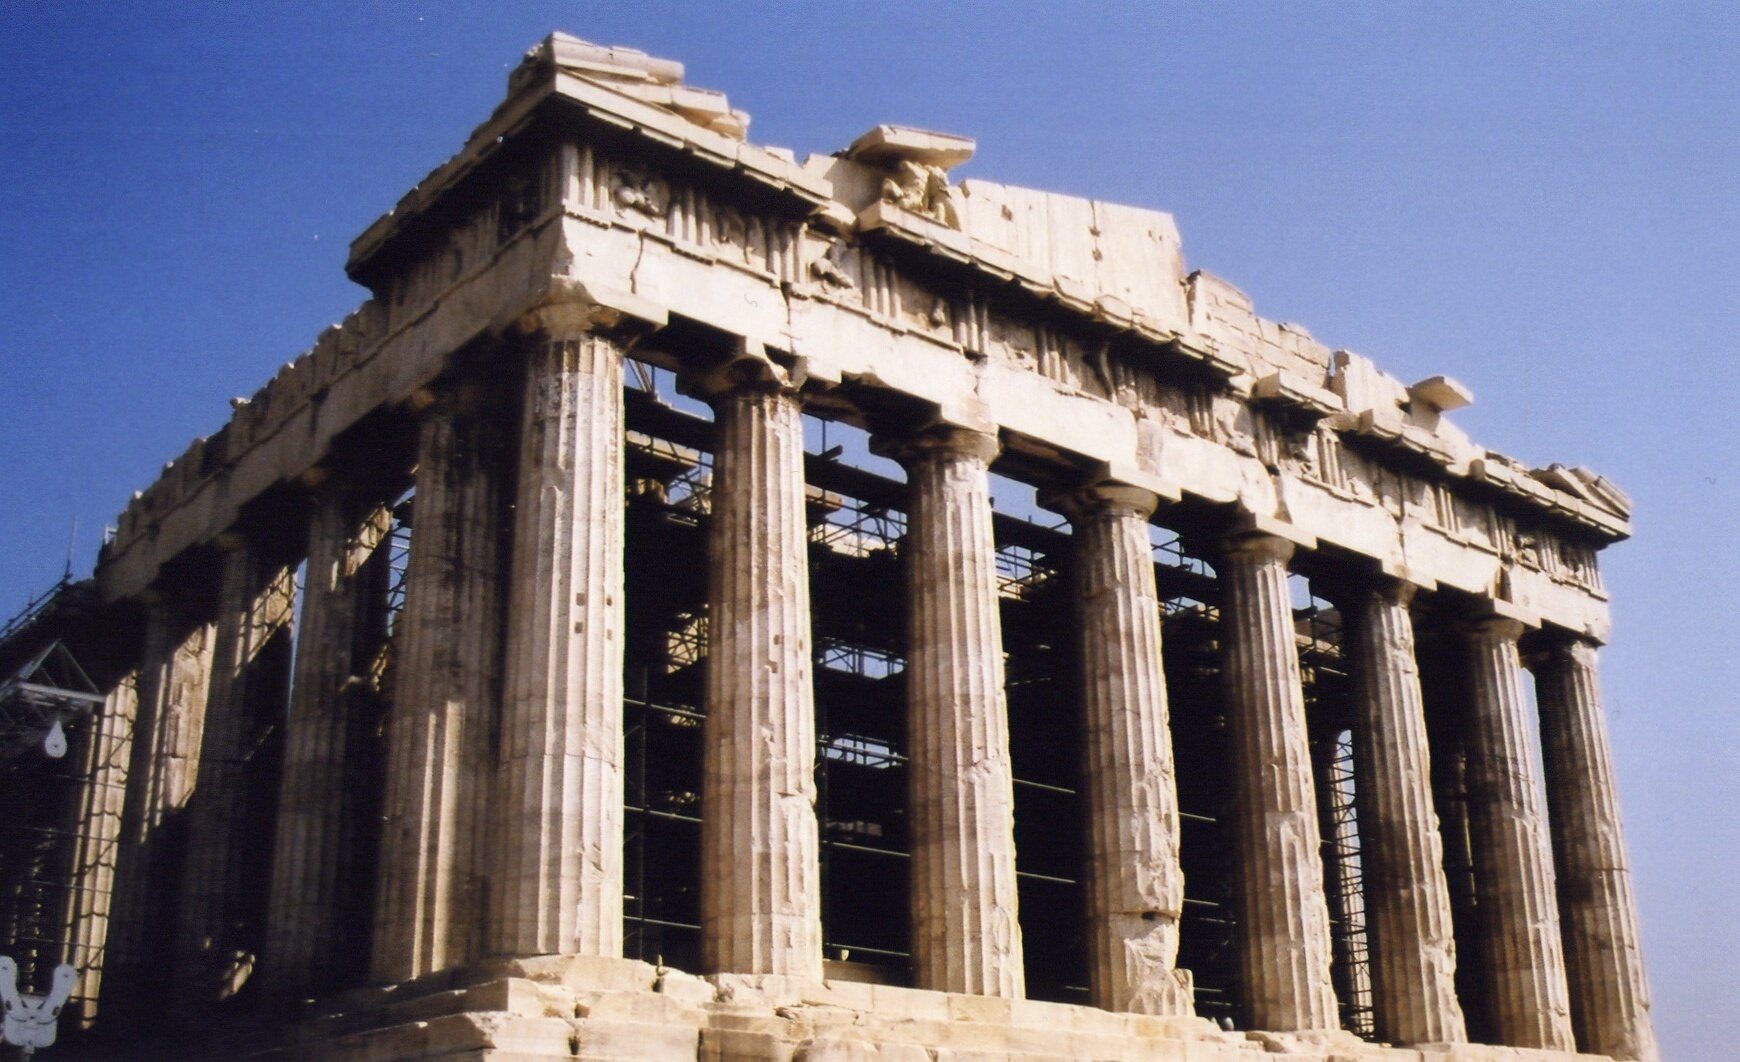 Zdjęcie przedstawia Akropol w Atenach. Budynek wspiera się na szeregu kolumn doryckich. W jego środku widać rusztowania.